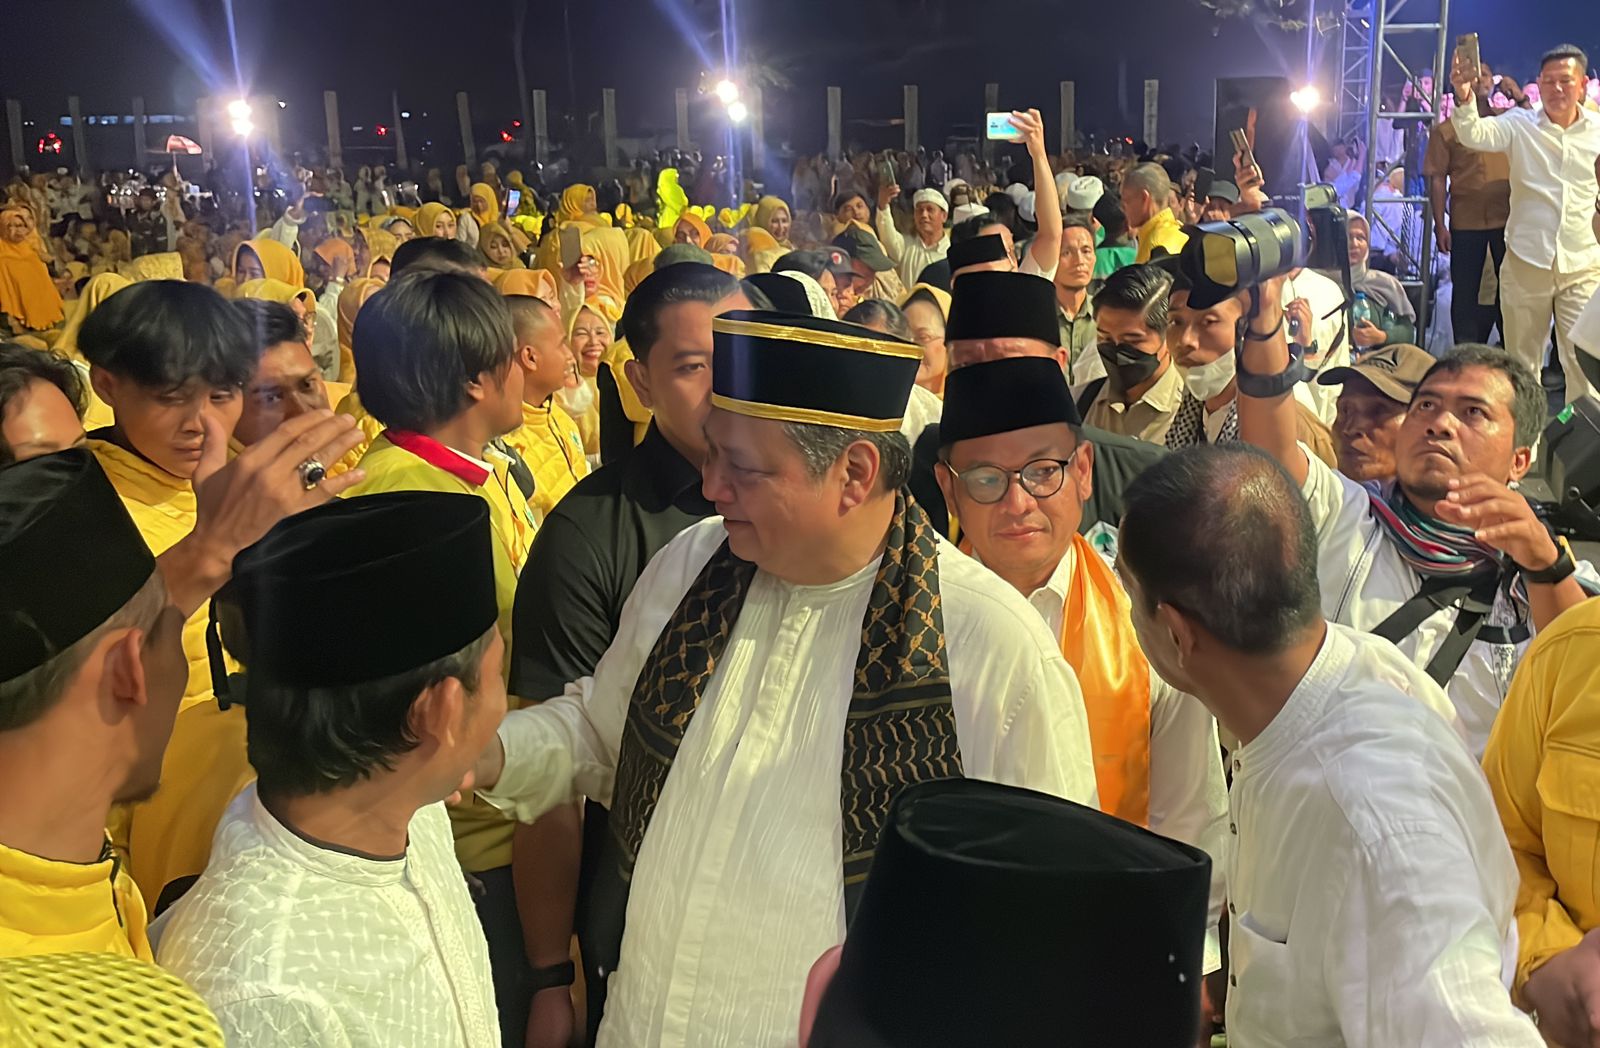 Ketua Umum Partai Golkar, Airlangga Hartarto Hadiri Kegiatan Golkar Bershalawat di Kabupaten Bandung. Foto Agi Jabar Ekspres